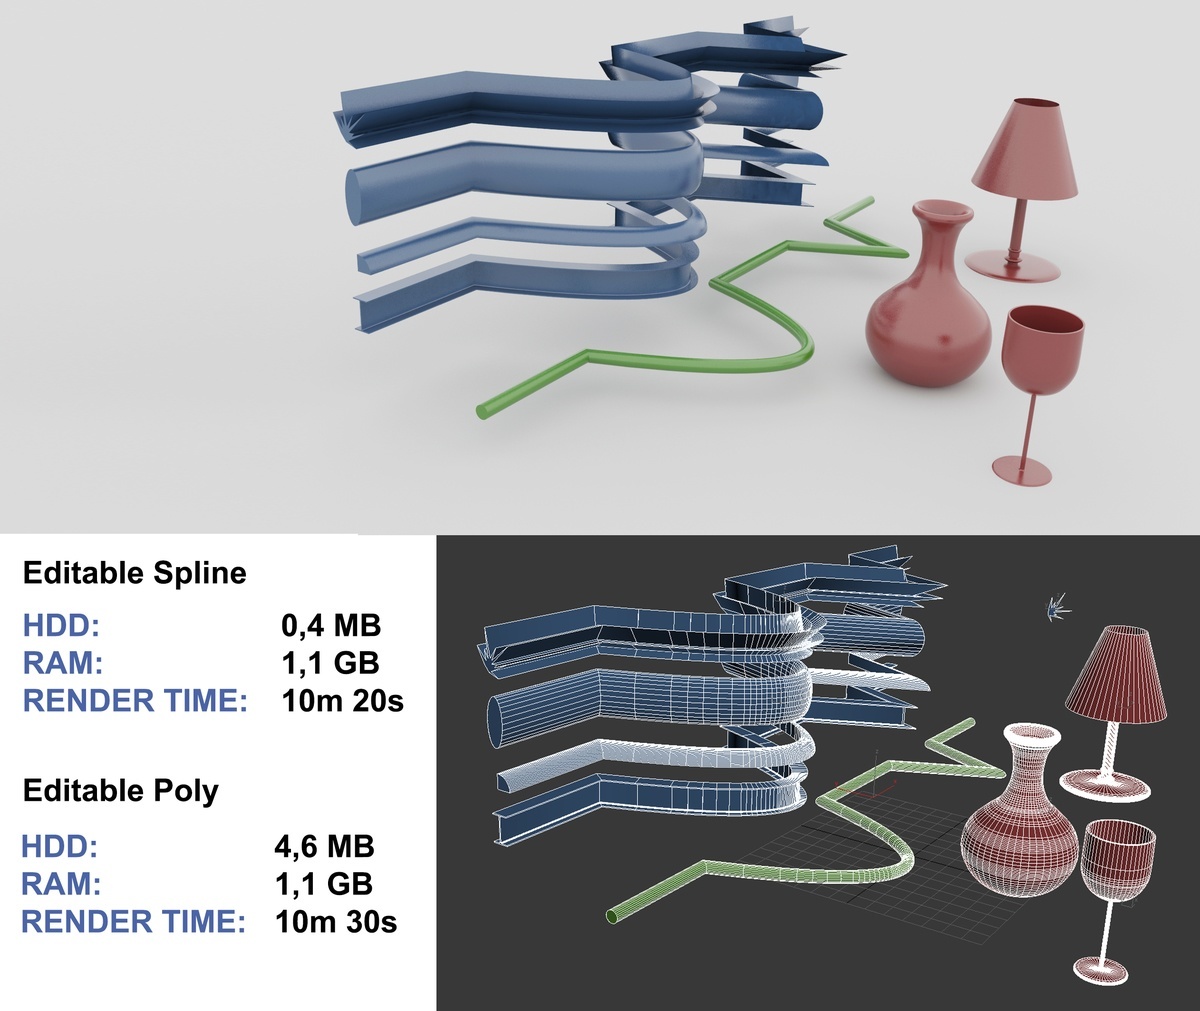 11 - How to Optimize Scenes in 3Ds Max - Editable Spline vs Poly Comparison